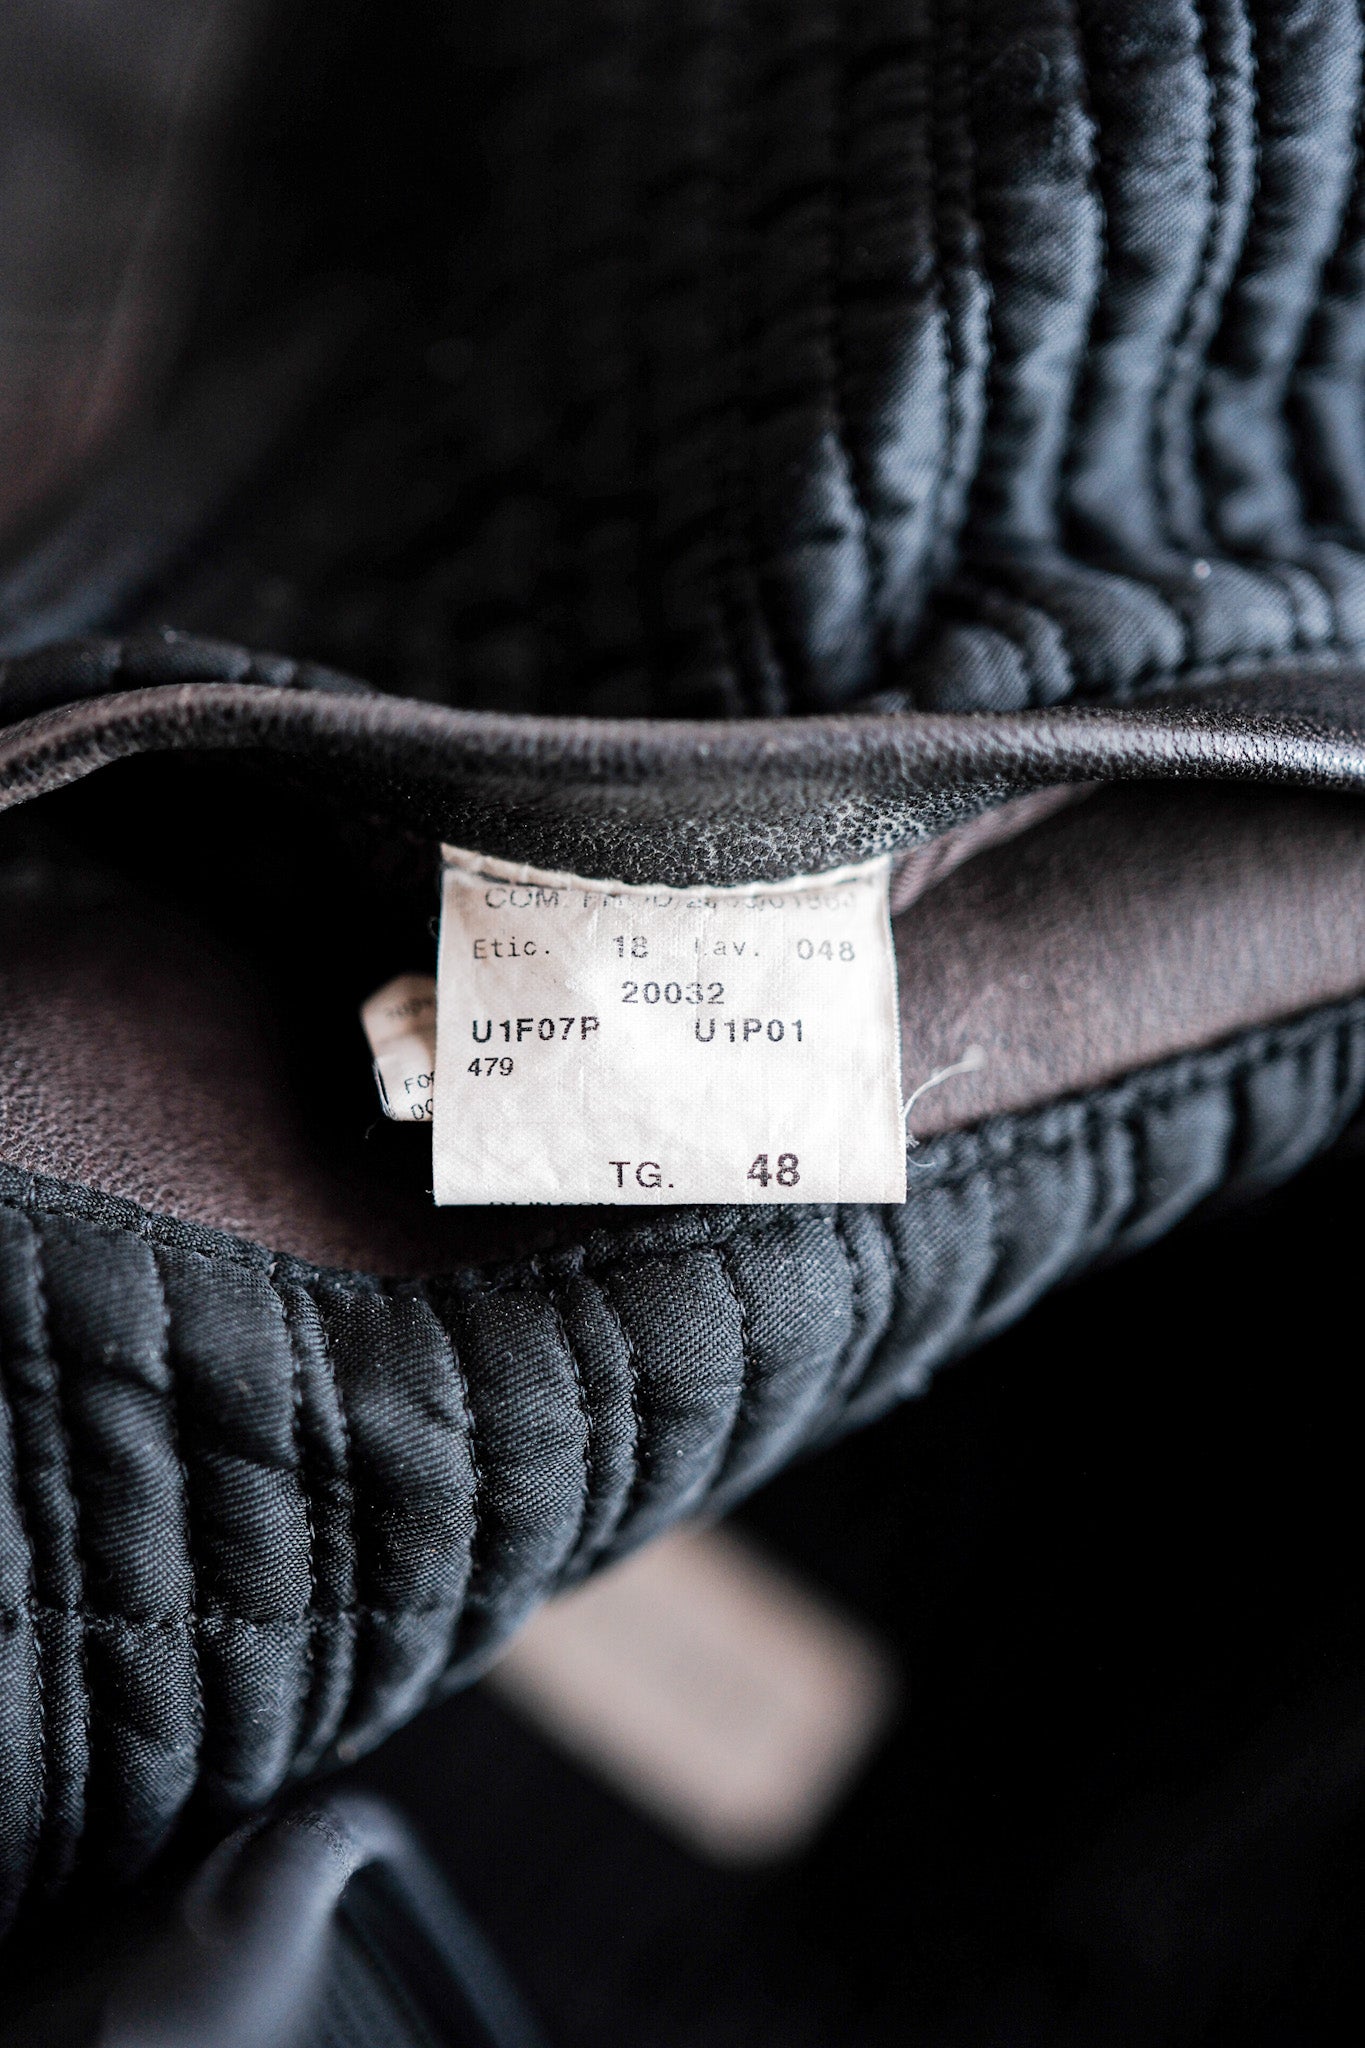 [〜90年代]舊的Emporio Armani支架領式皮夾克大小。48